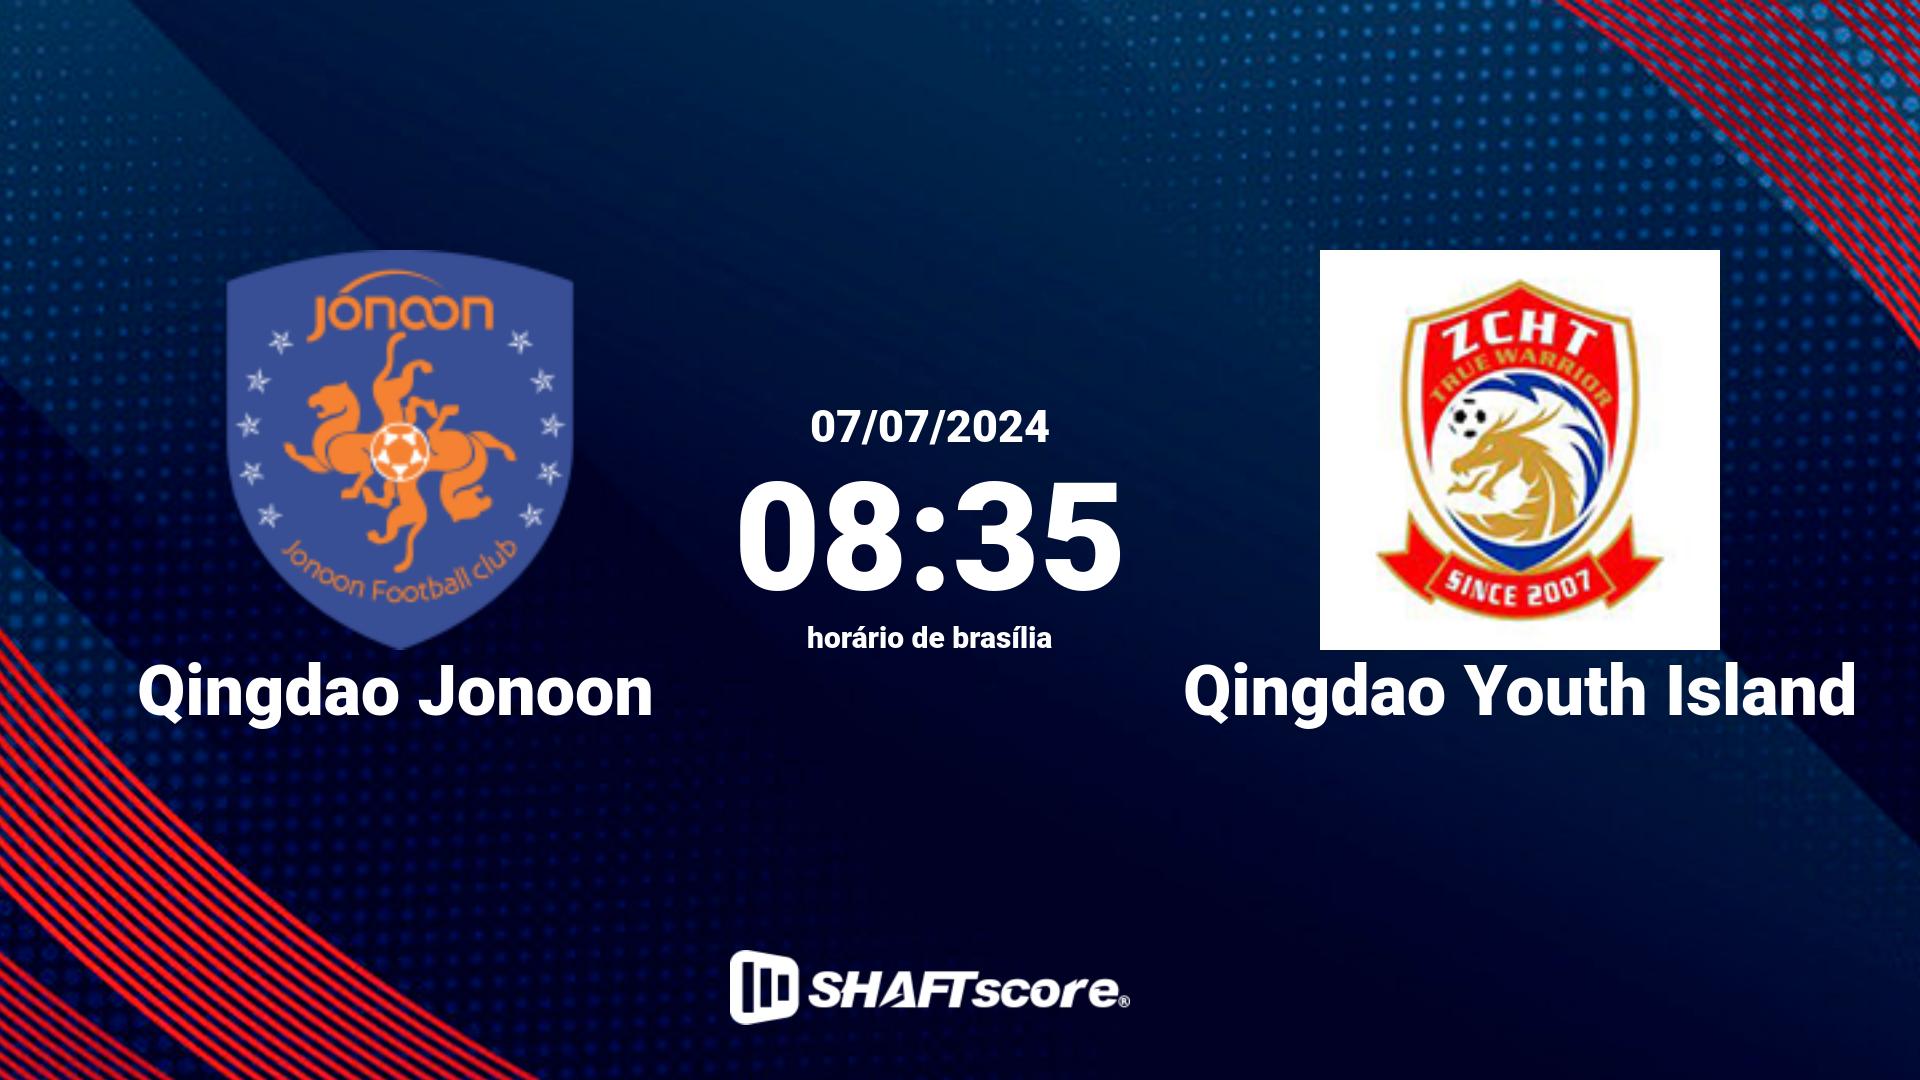 Estatísticas do jogo Qingdao Jonoon vs Qingdao Youth Island 07.07 08:35